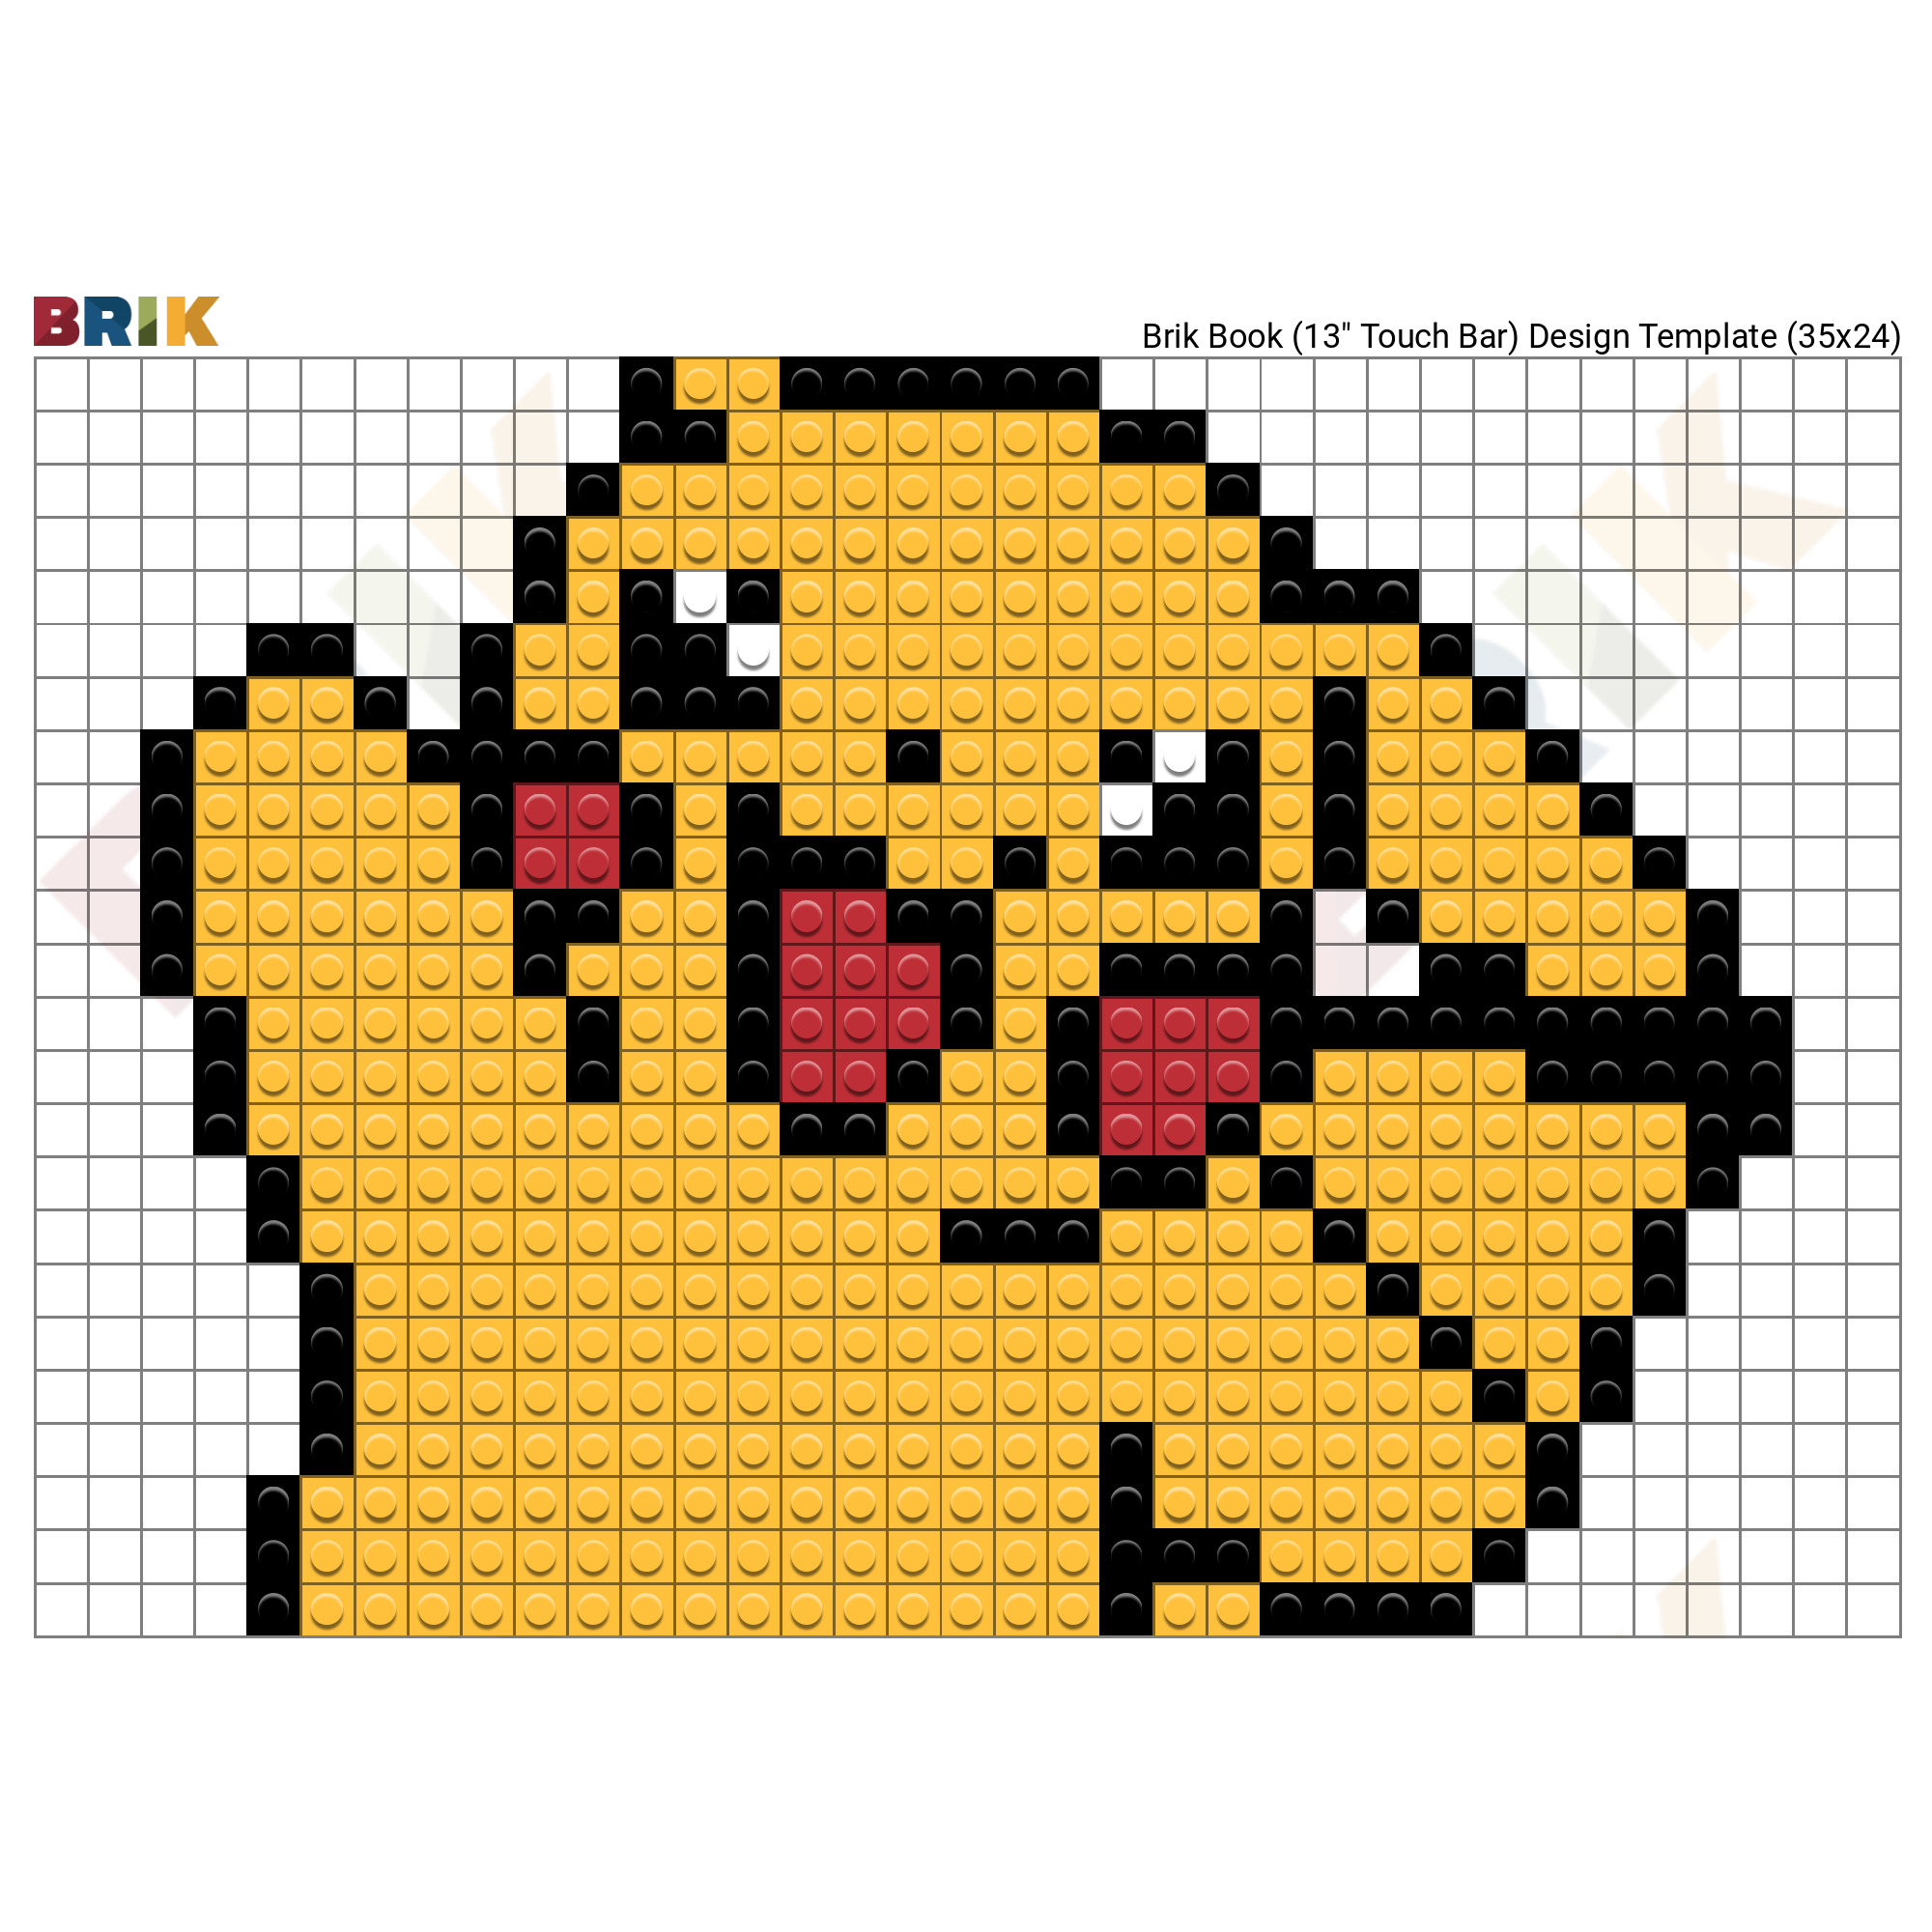 Pokemon Pixel Art 32x32 Grid